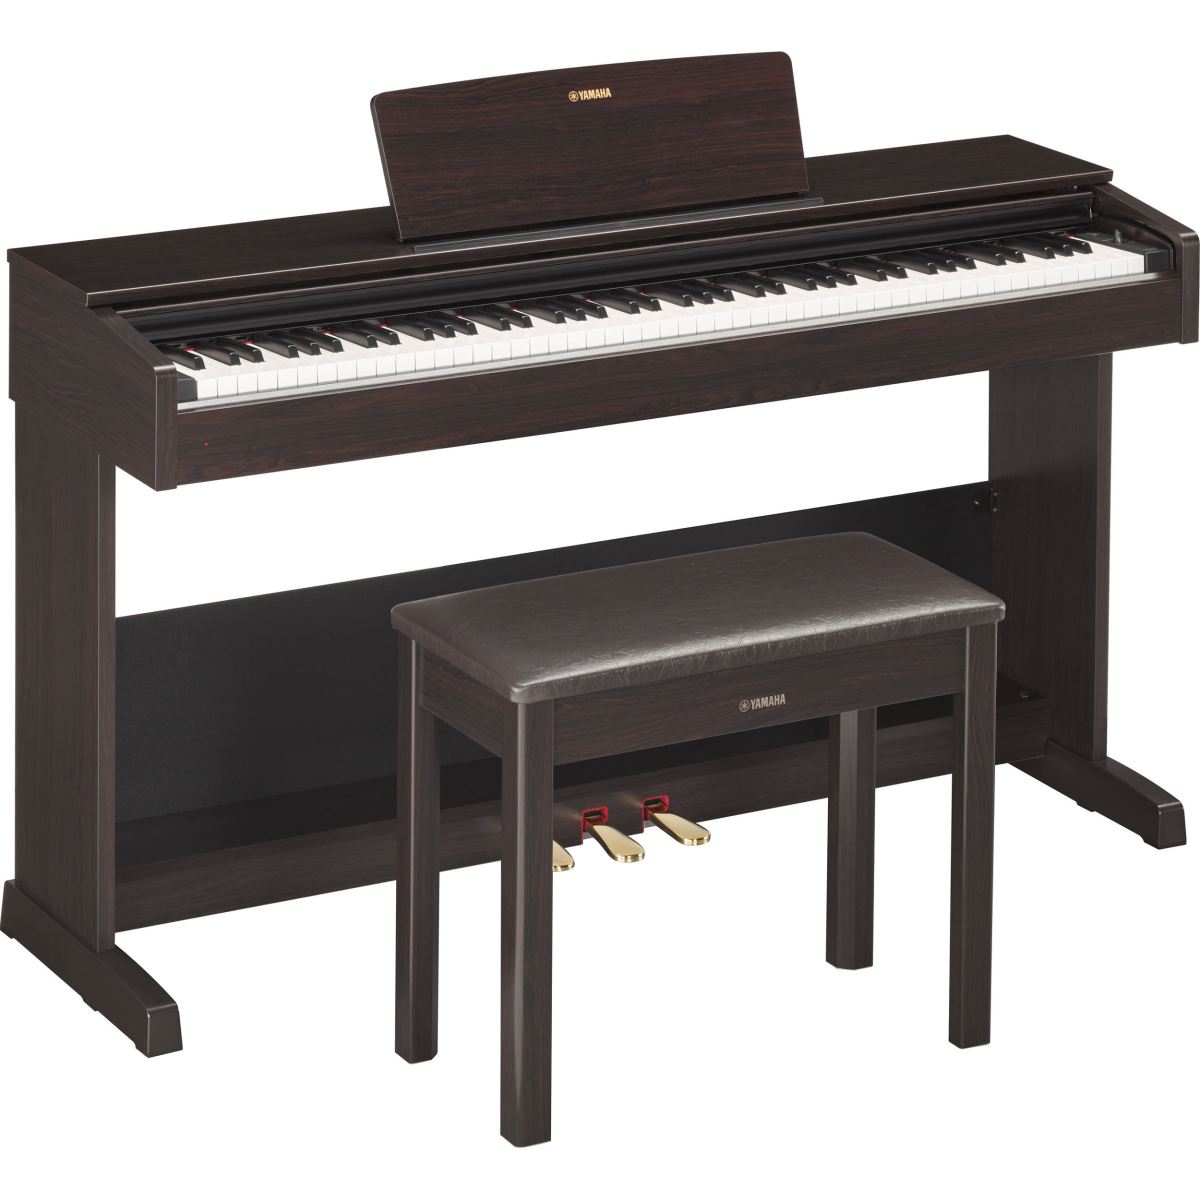 Piano điện Yamaha loại nào tốt? Giải đáp ngay!